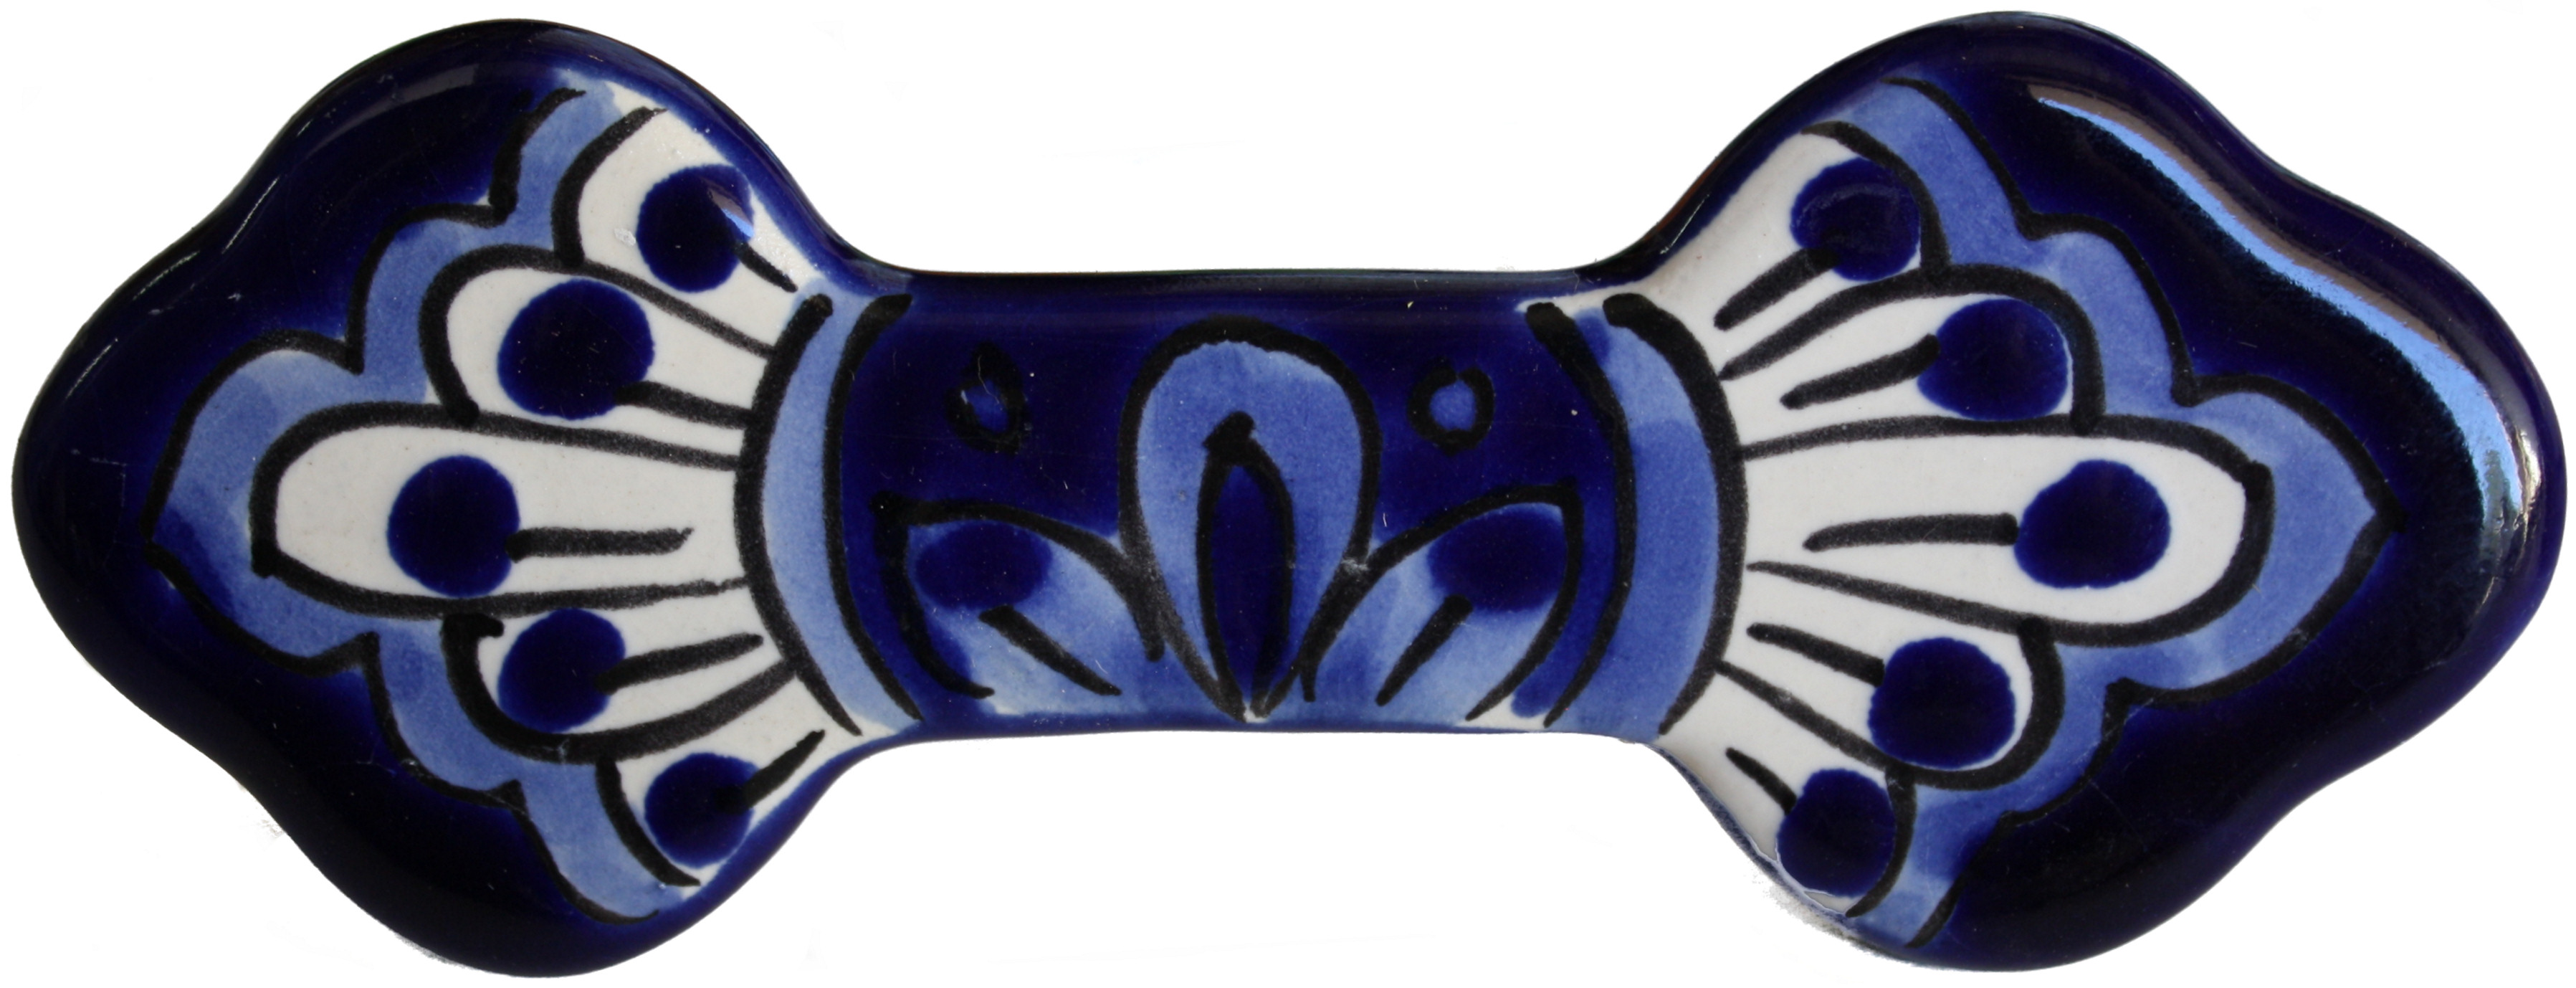 TalaMex Blue Talavera Ceramic Drawer Pull